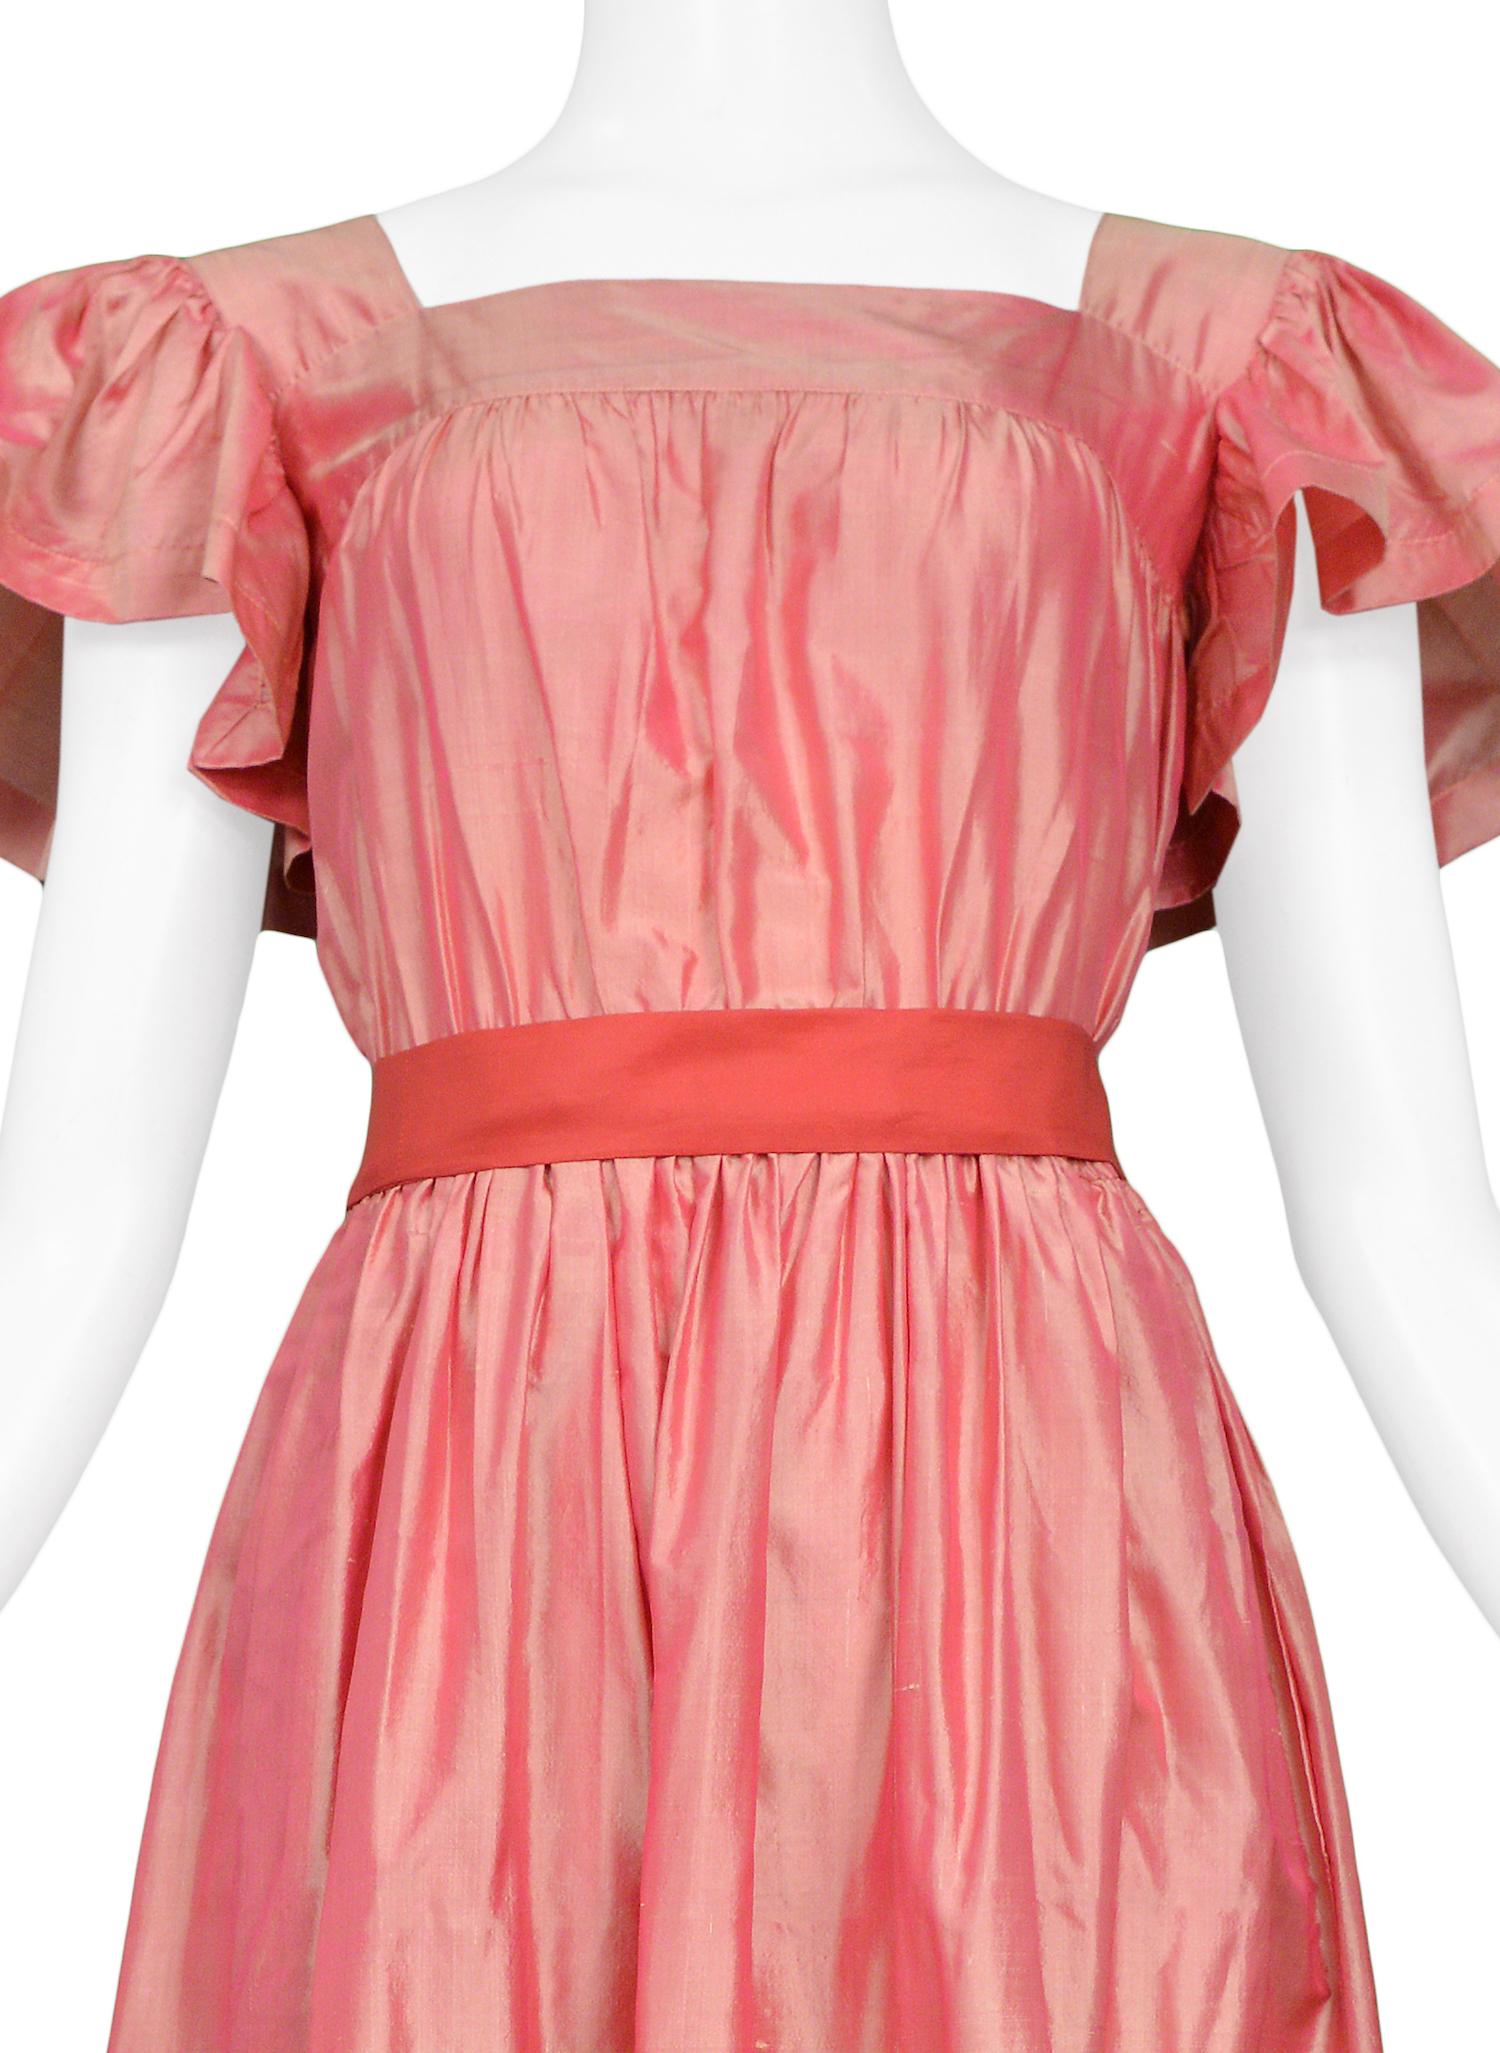 pink taffeta dress